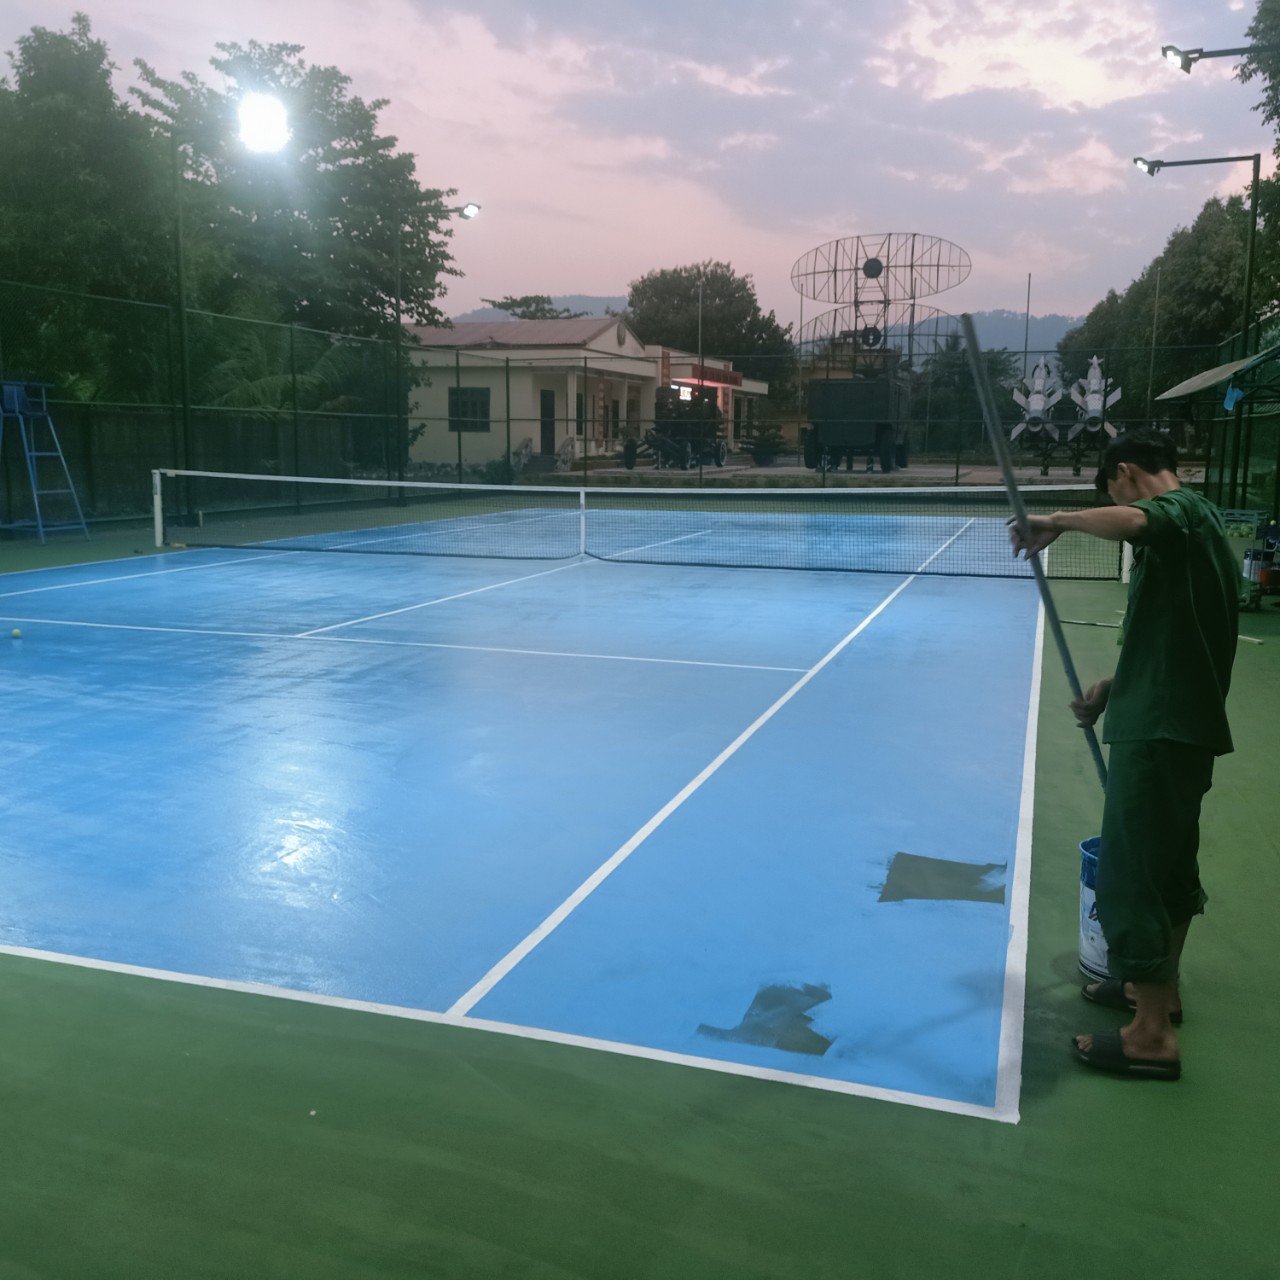 Thi công chống thấm sàn epoxy cho sân tennis: Giải pháp hoàn hảo cho độ bền và đẹp của sân chơi